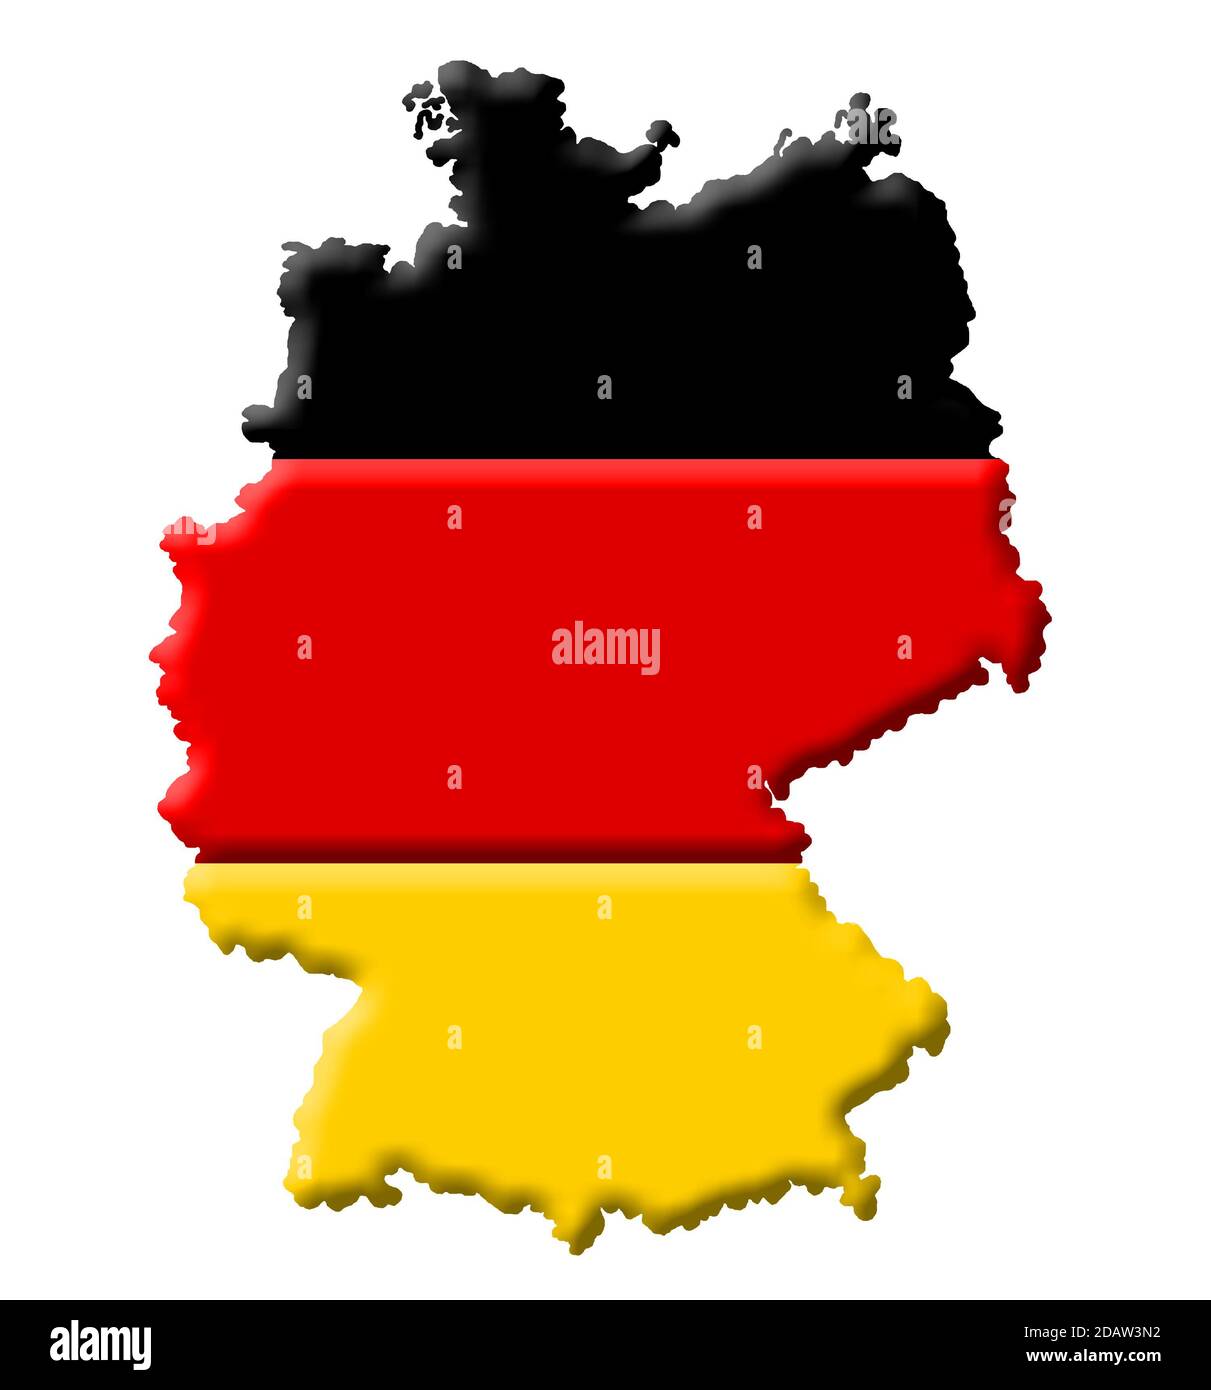 Mappa 3D della Germania con i colori della nazionale tedesca allarme Foto Stock